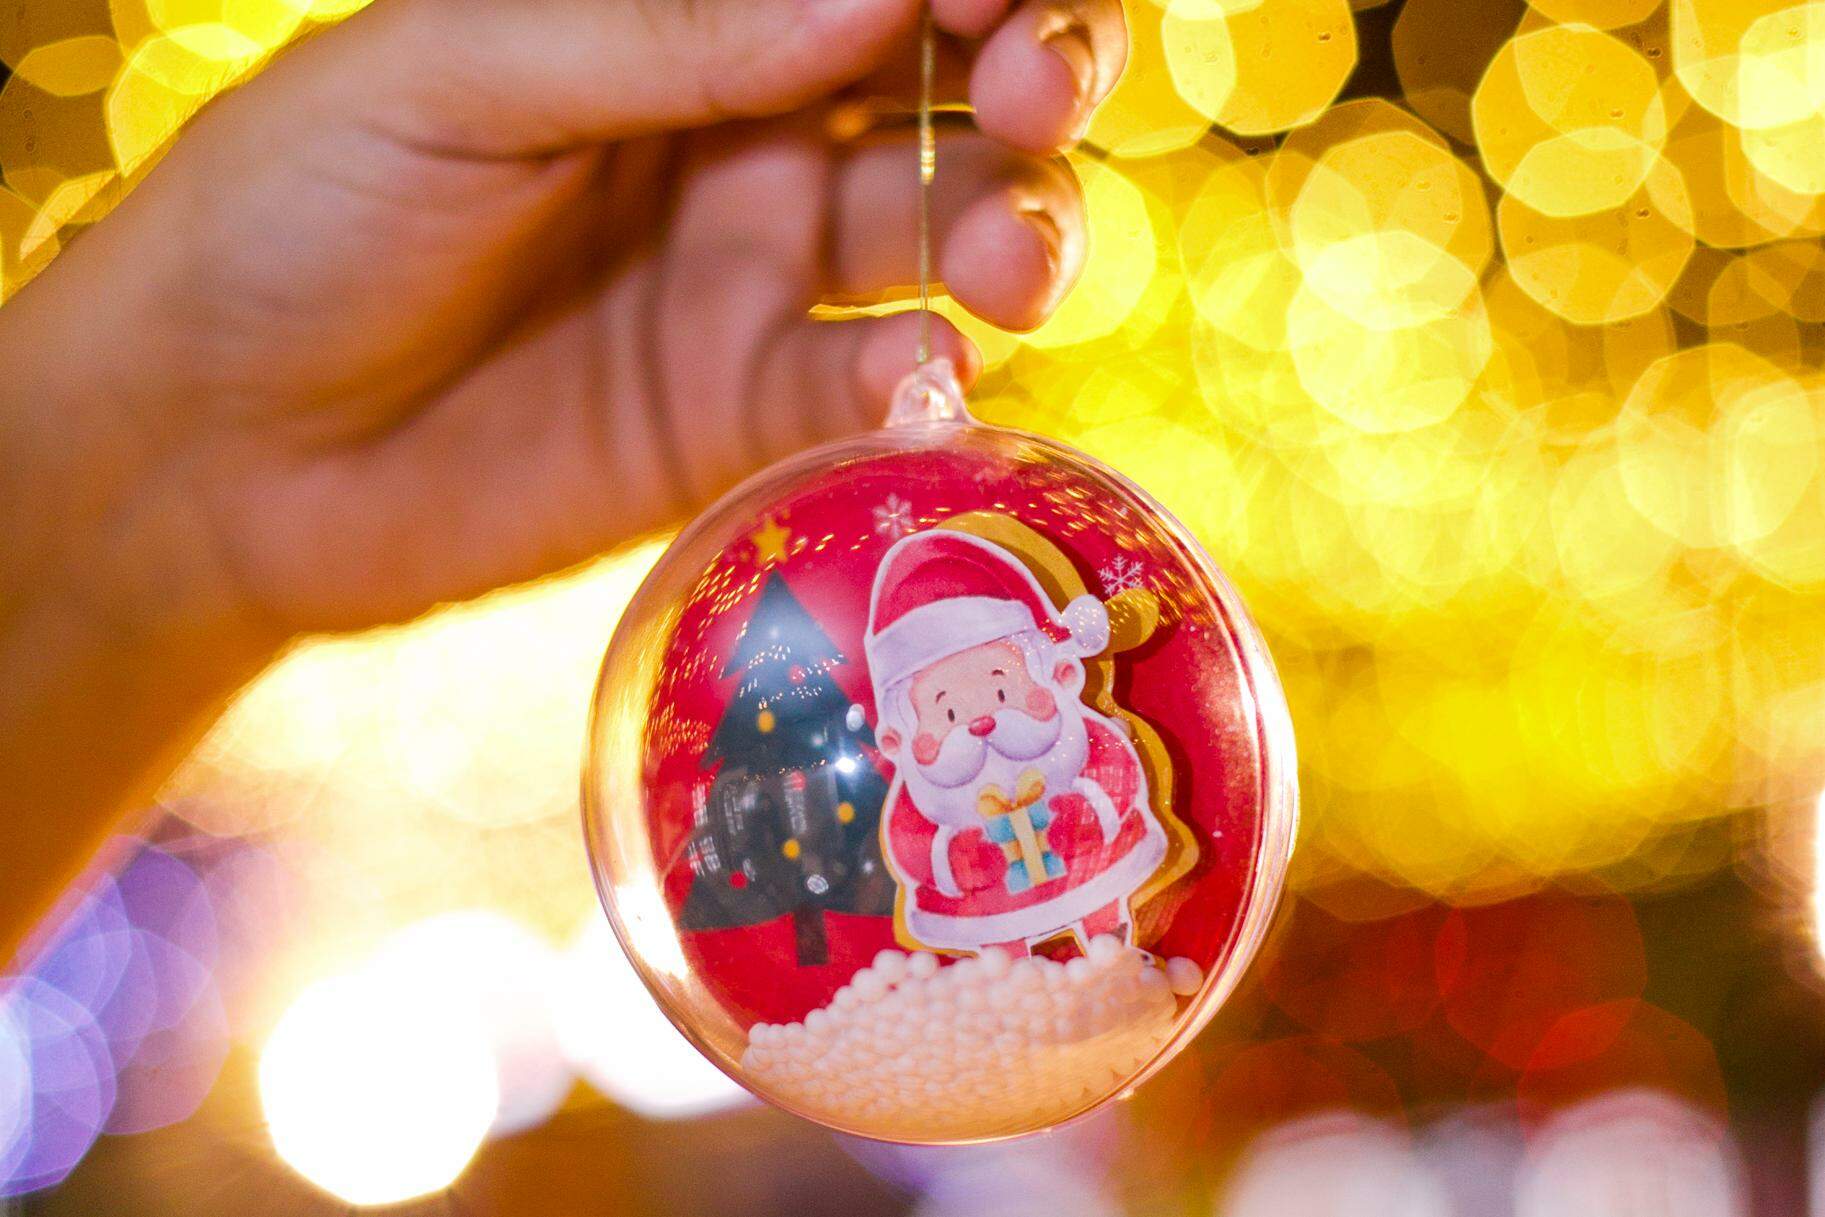 Bolas de Natal: 'Fora da Caixinha' ensina crianças a fazerem enfeites  natalinos personalizados | Belém | O Liberal